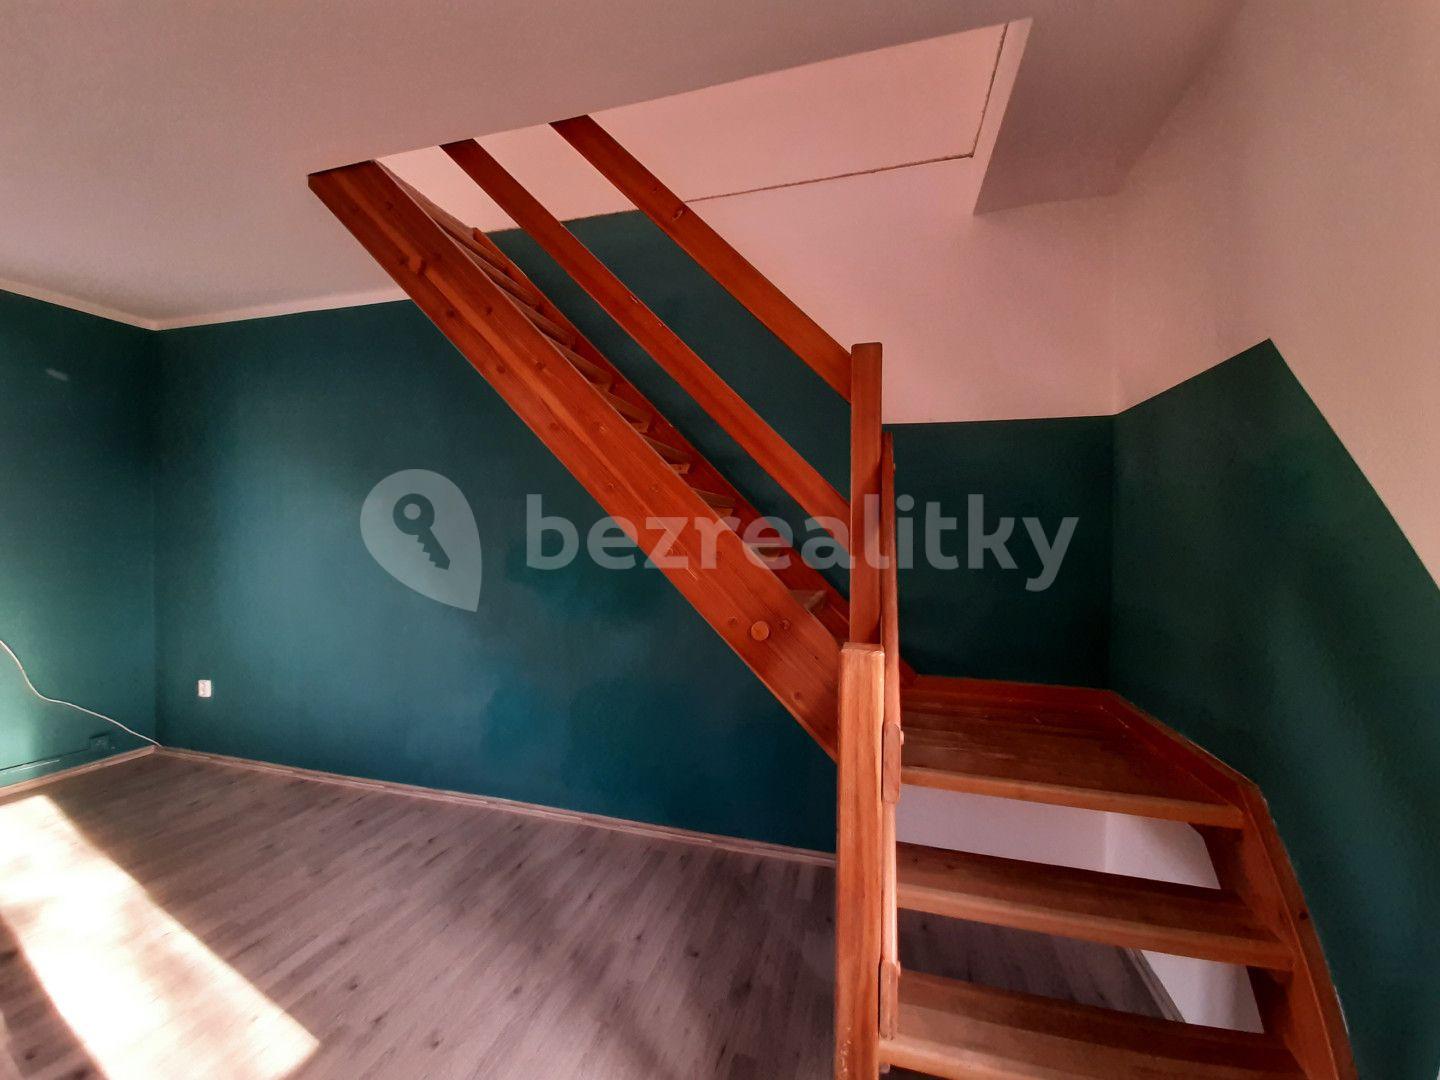 Prodej domu 84 m², pozemek 353 m², Kout, Troubky, Olomoucký kraj